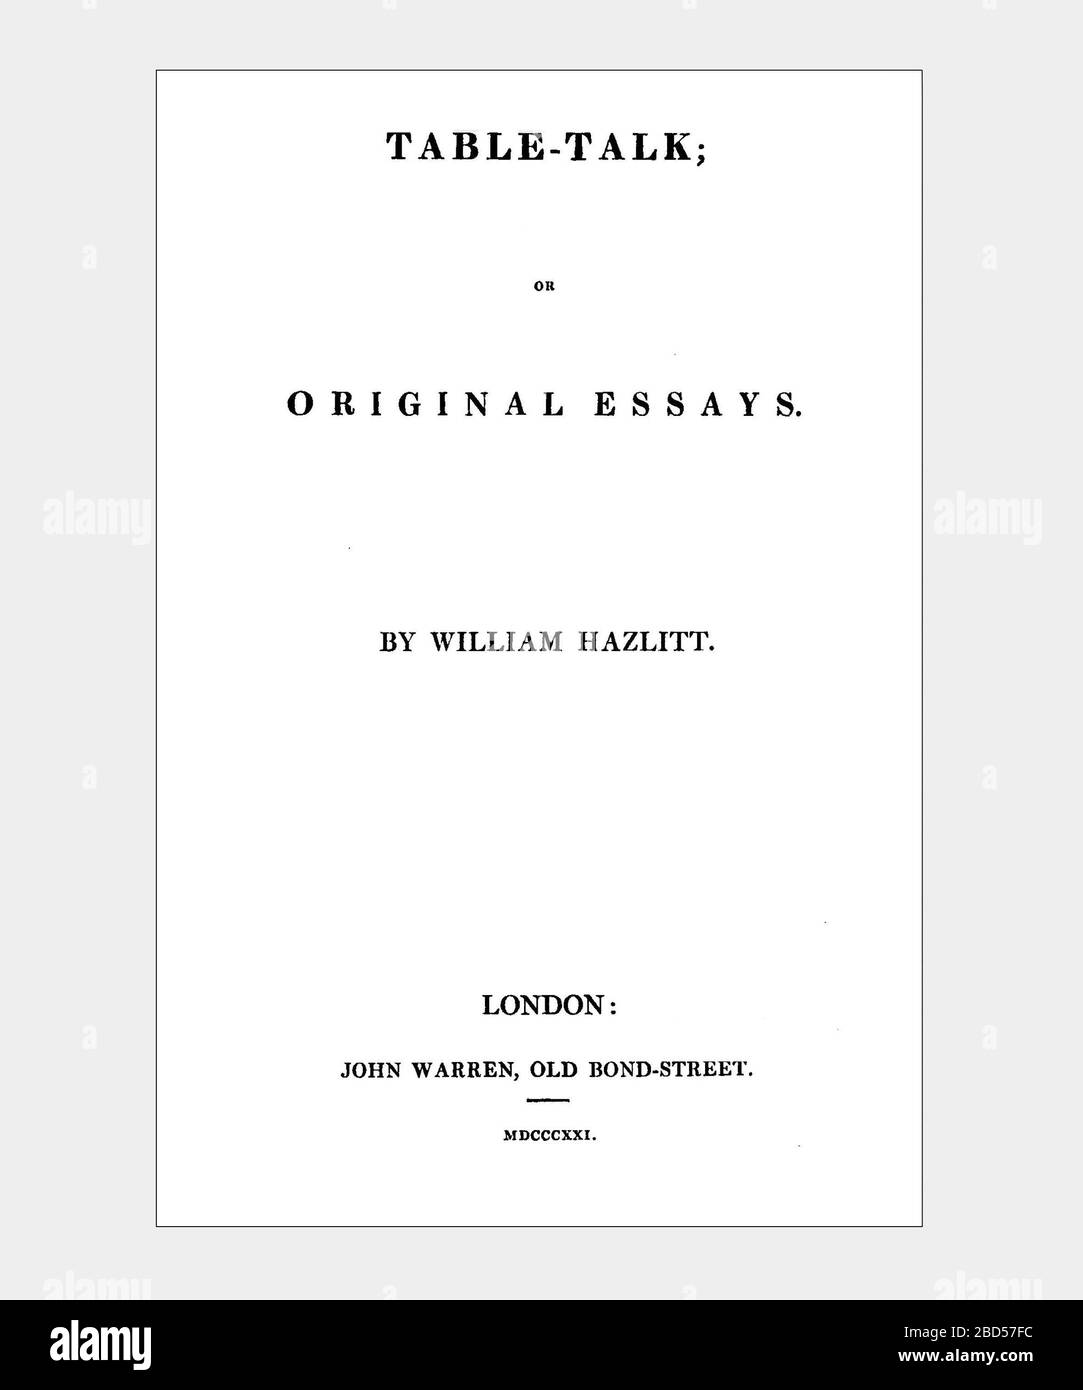 Titelseite von William Hazlitt Table Talk aktualisiert und zurückgesetzt Stockfoto